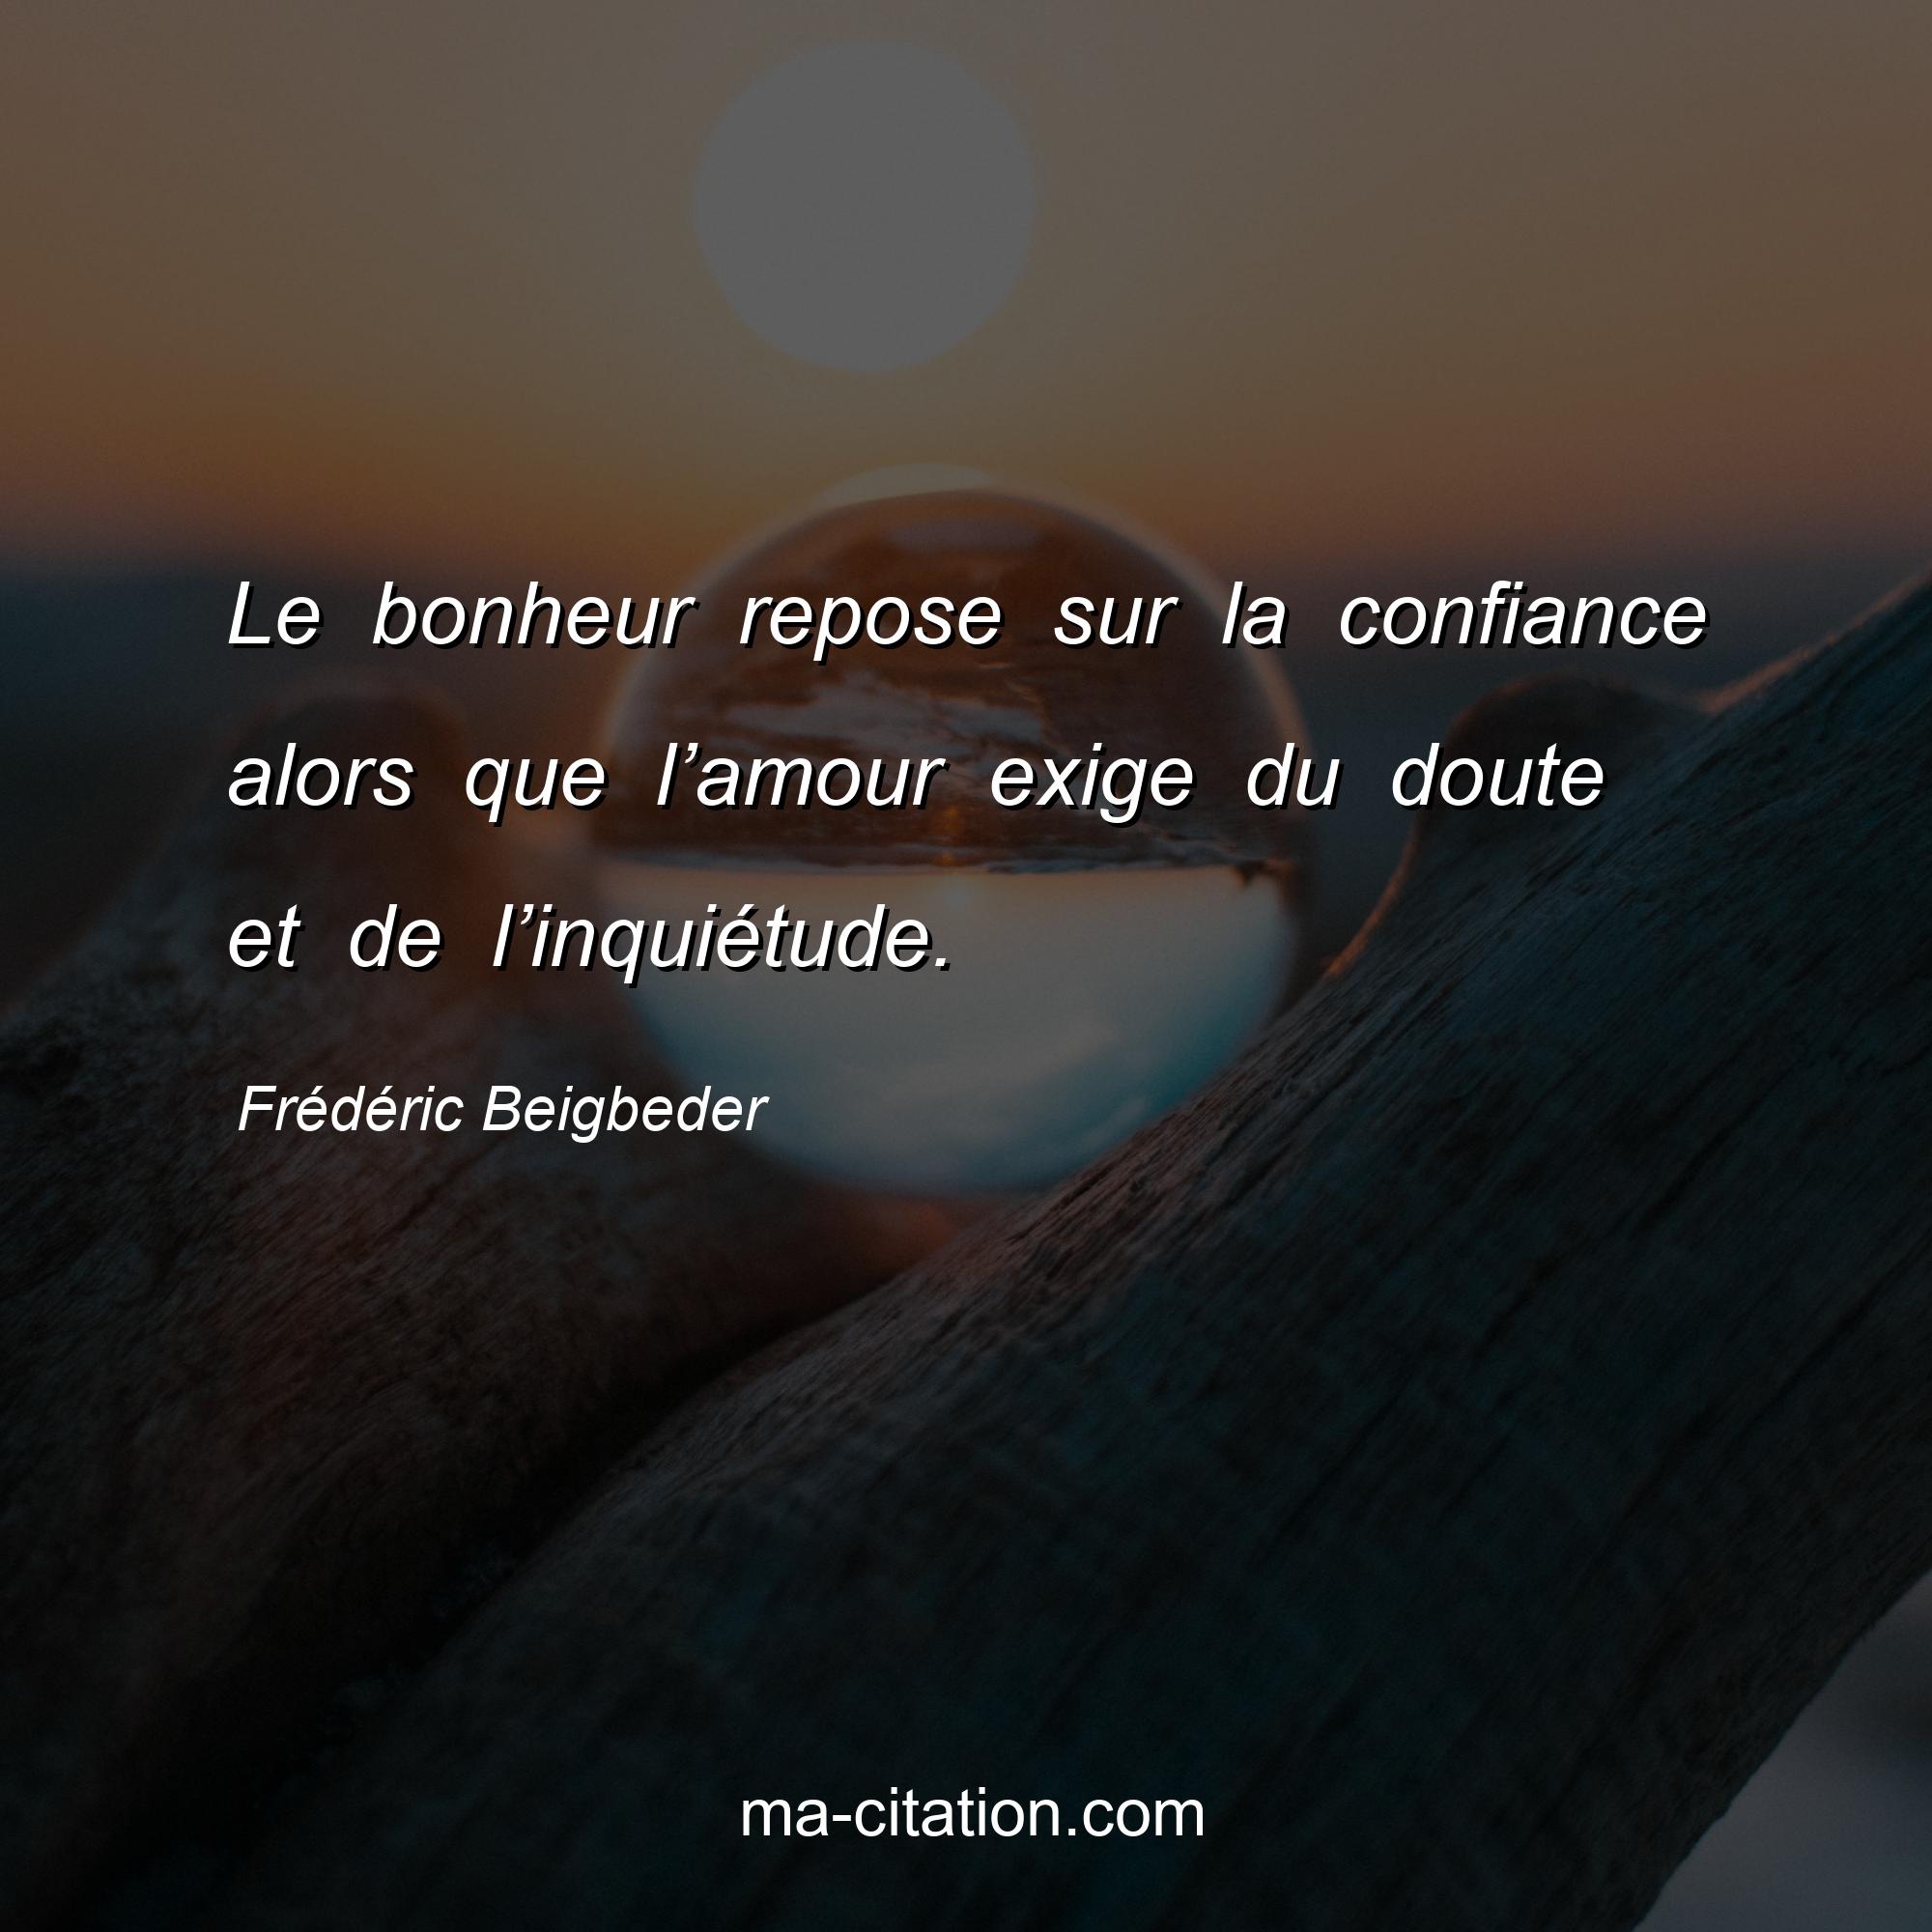 Frédéric Beigbeder : Le bonheur repose sur la confiance alors que l’amour exige du doute et de l’inquiétude.